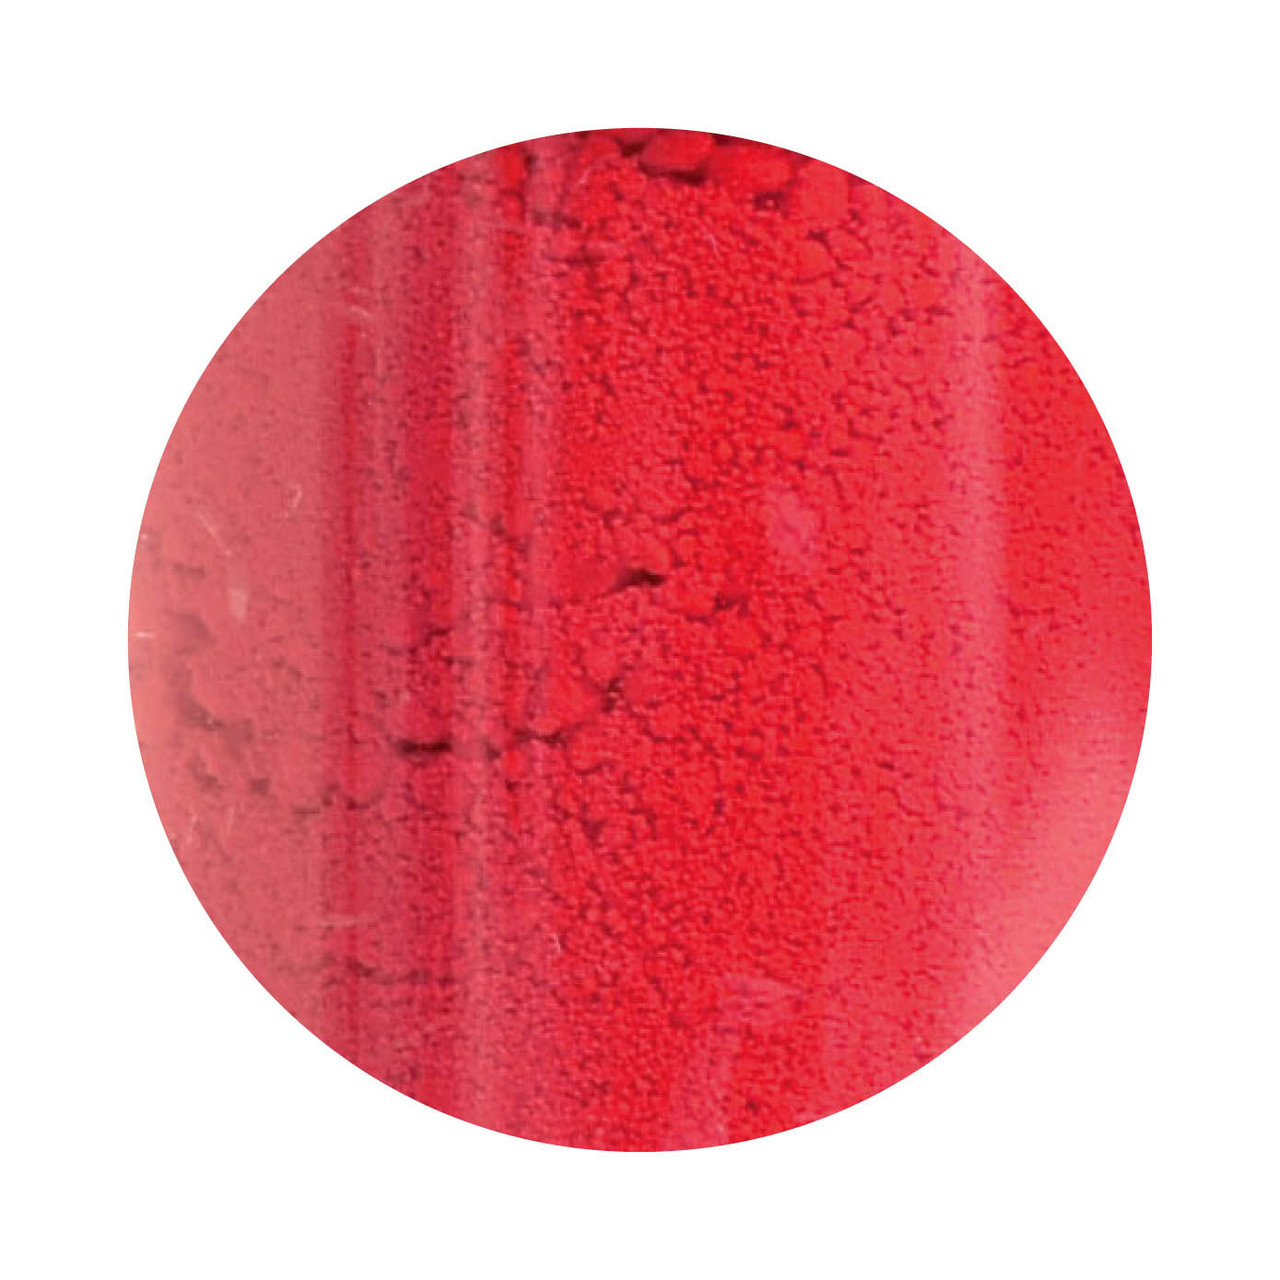 200g Powder Dye - Red - E124